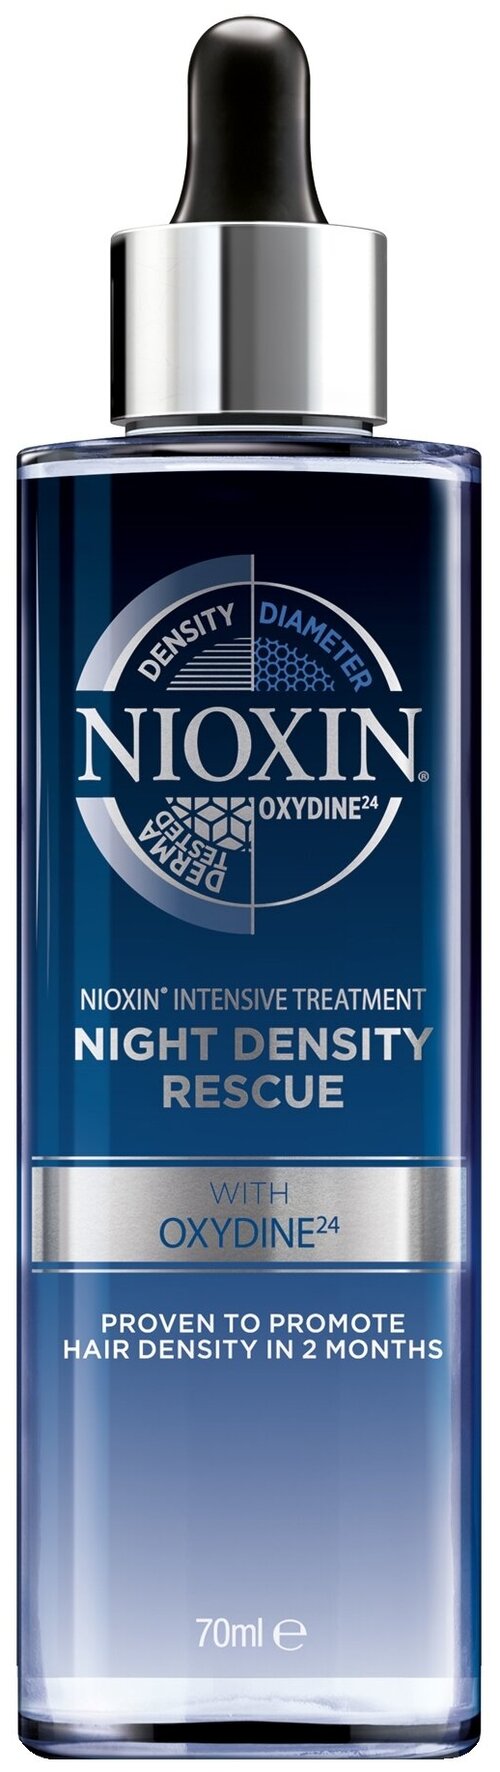 Nioxin Intensive Treatment Ночная сыворотка для увеличения густоты волос, 100 г, 70 мл, бутылка